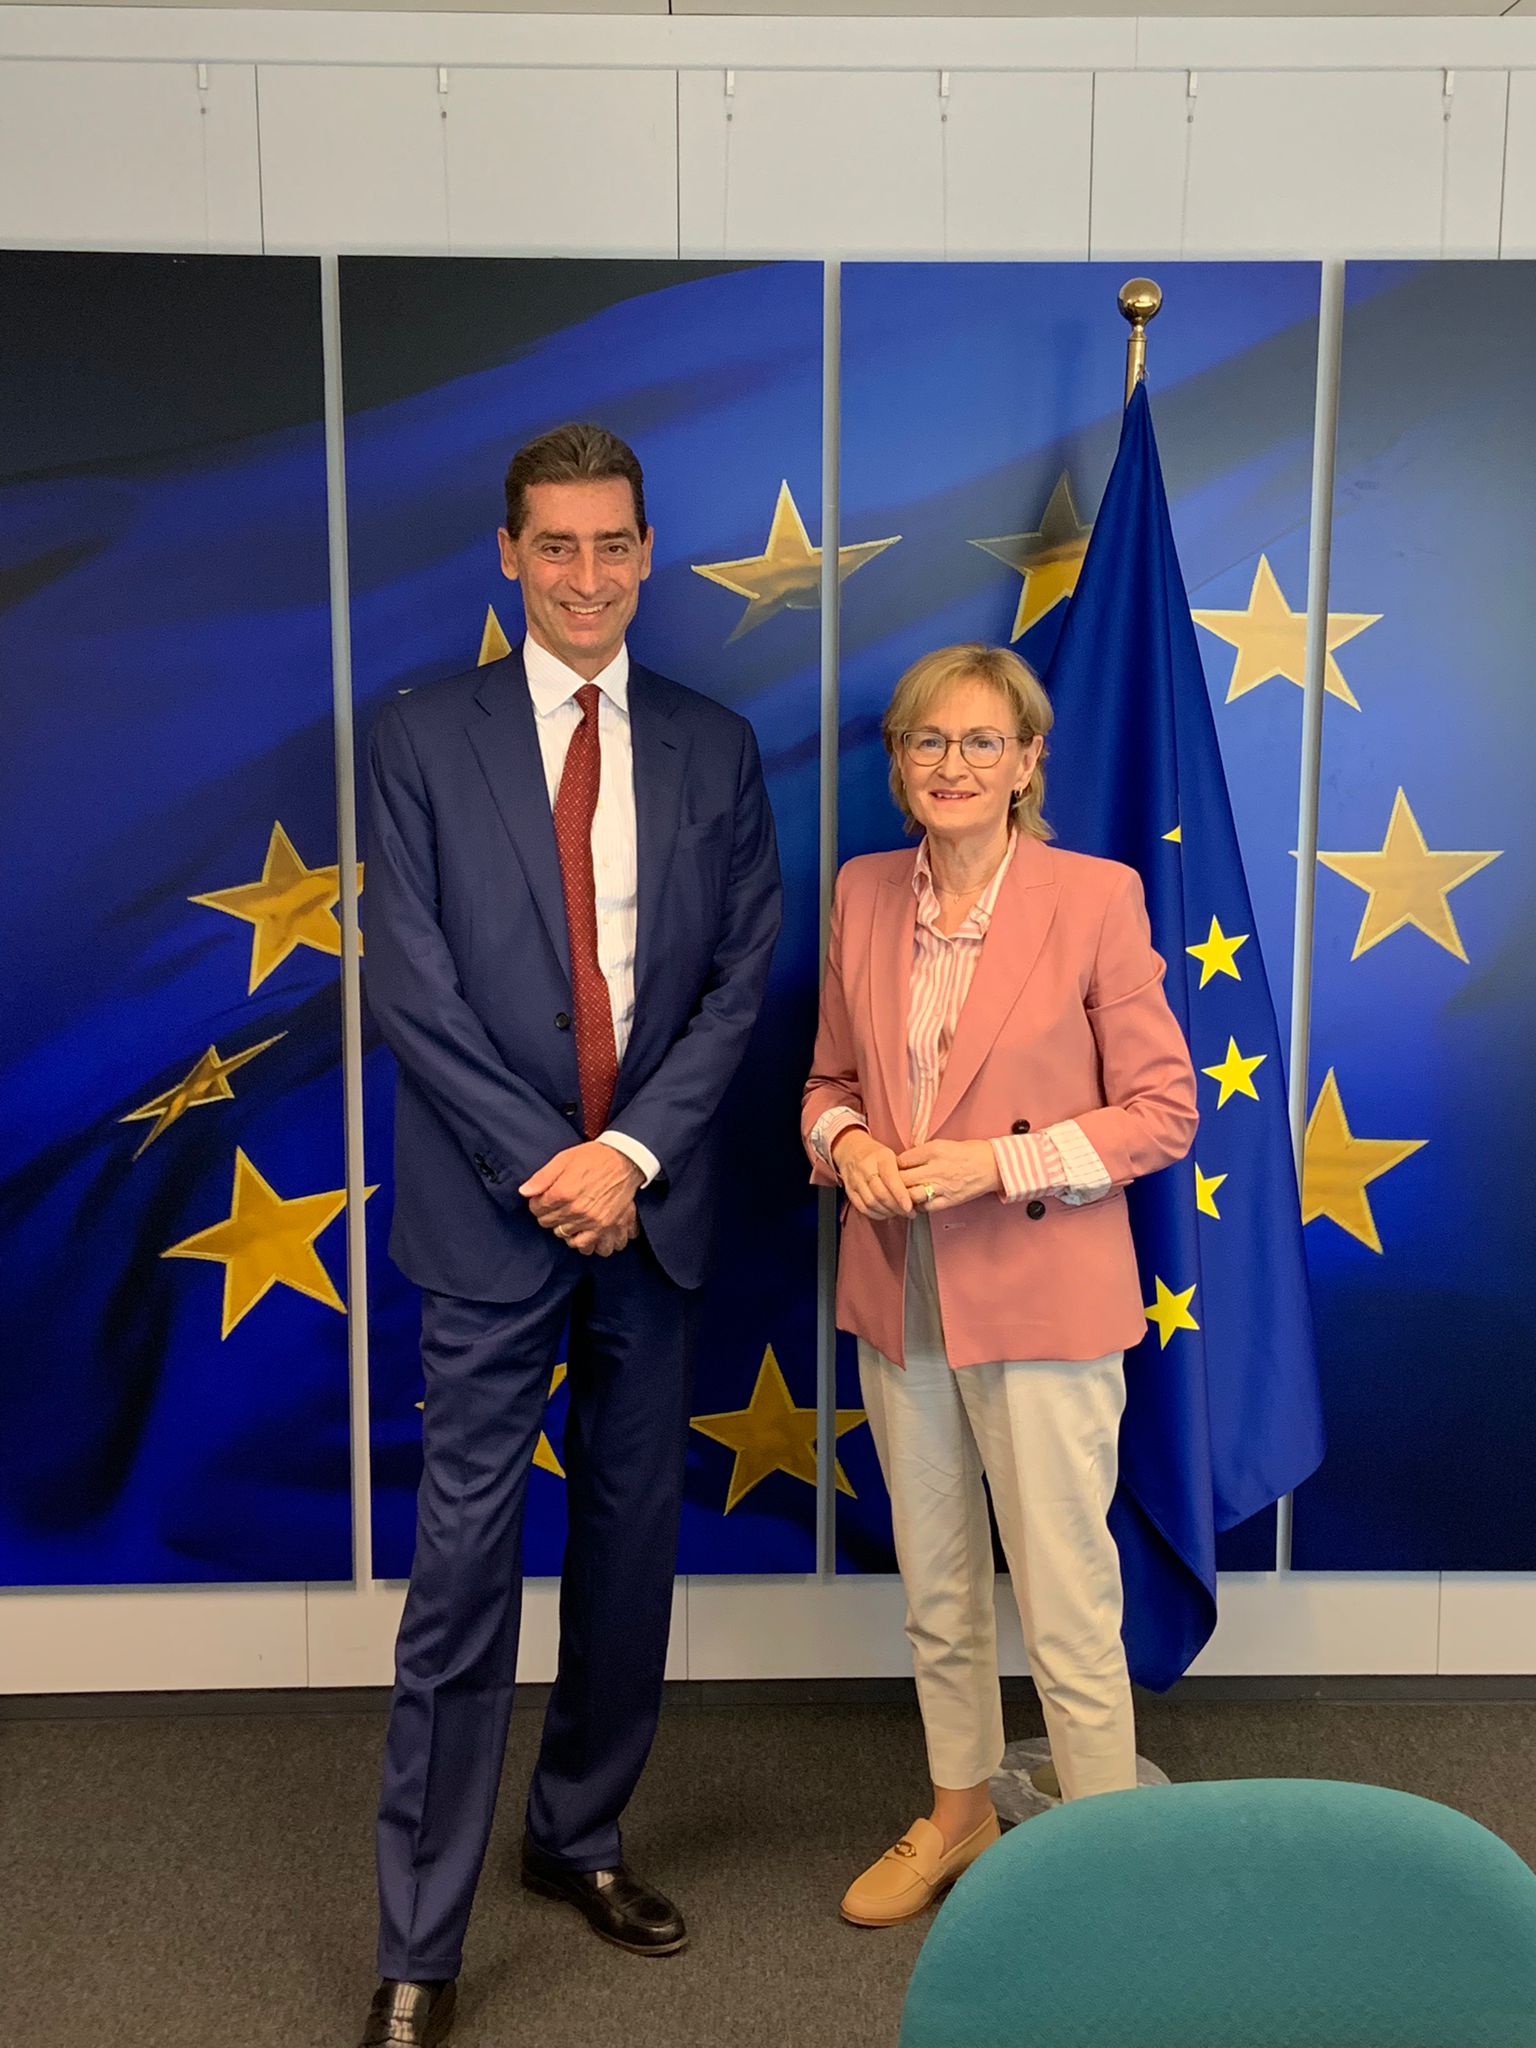 Predsednik Generalija Andrea Sironi sastao se u Briselu sa Mejrid Mekginis, evropskom komesarkom za finansijske usluge, finansijsku stabilnost i tržišta kapitala Unije